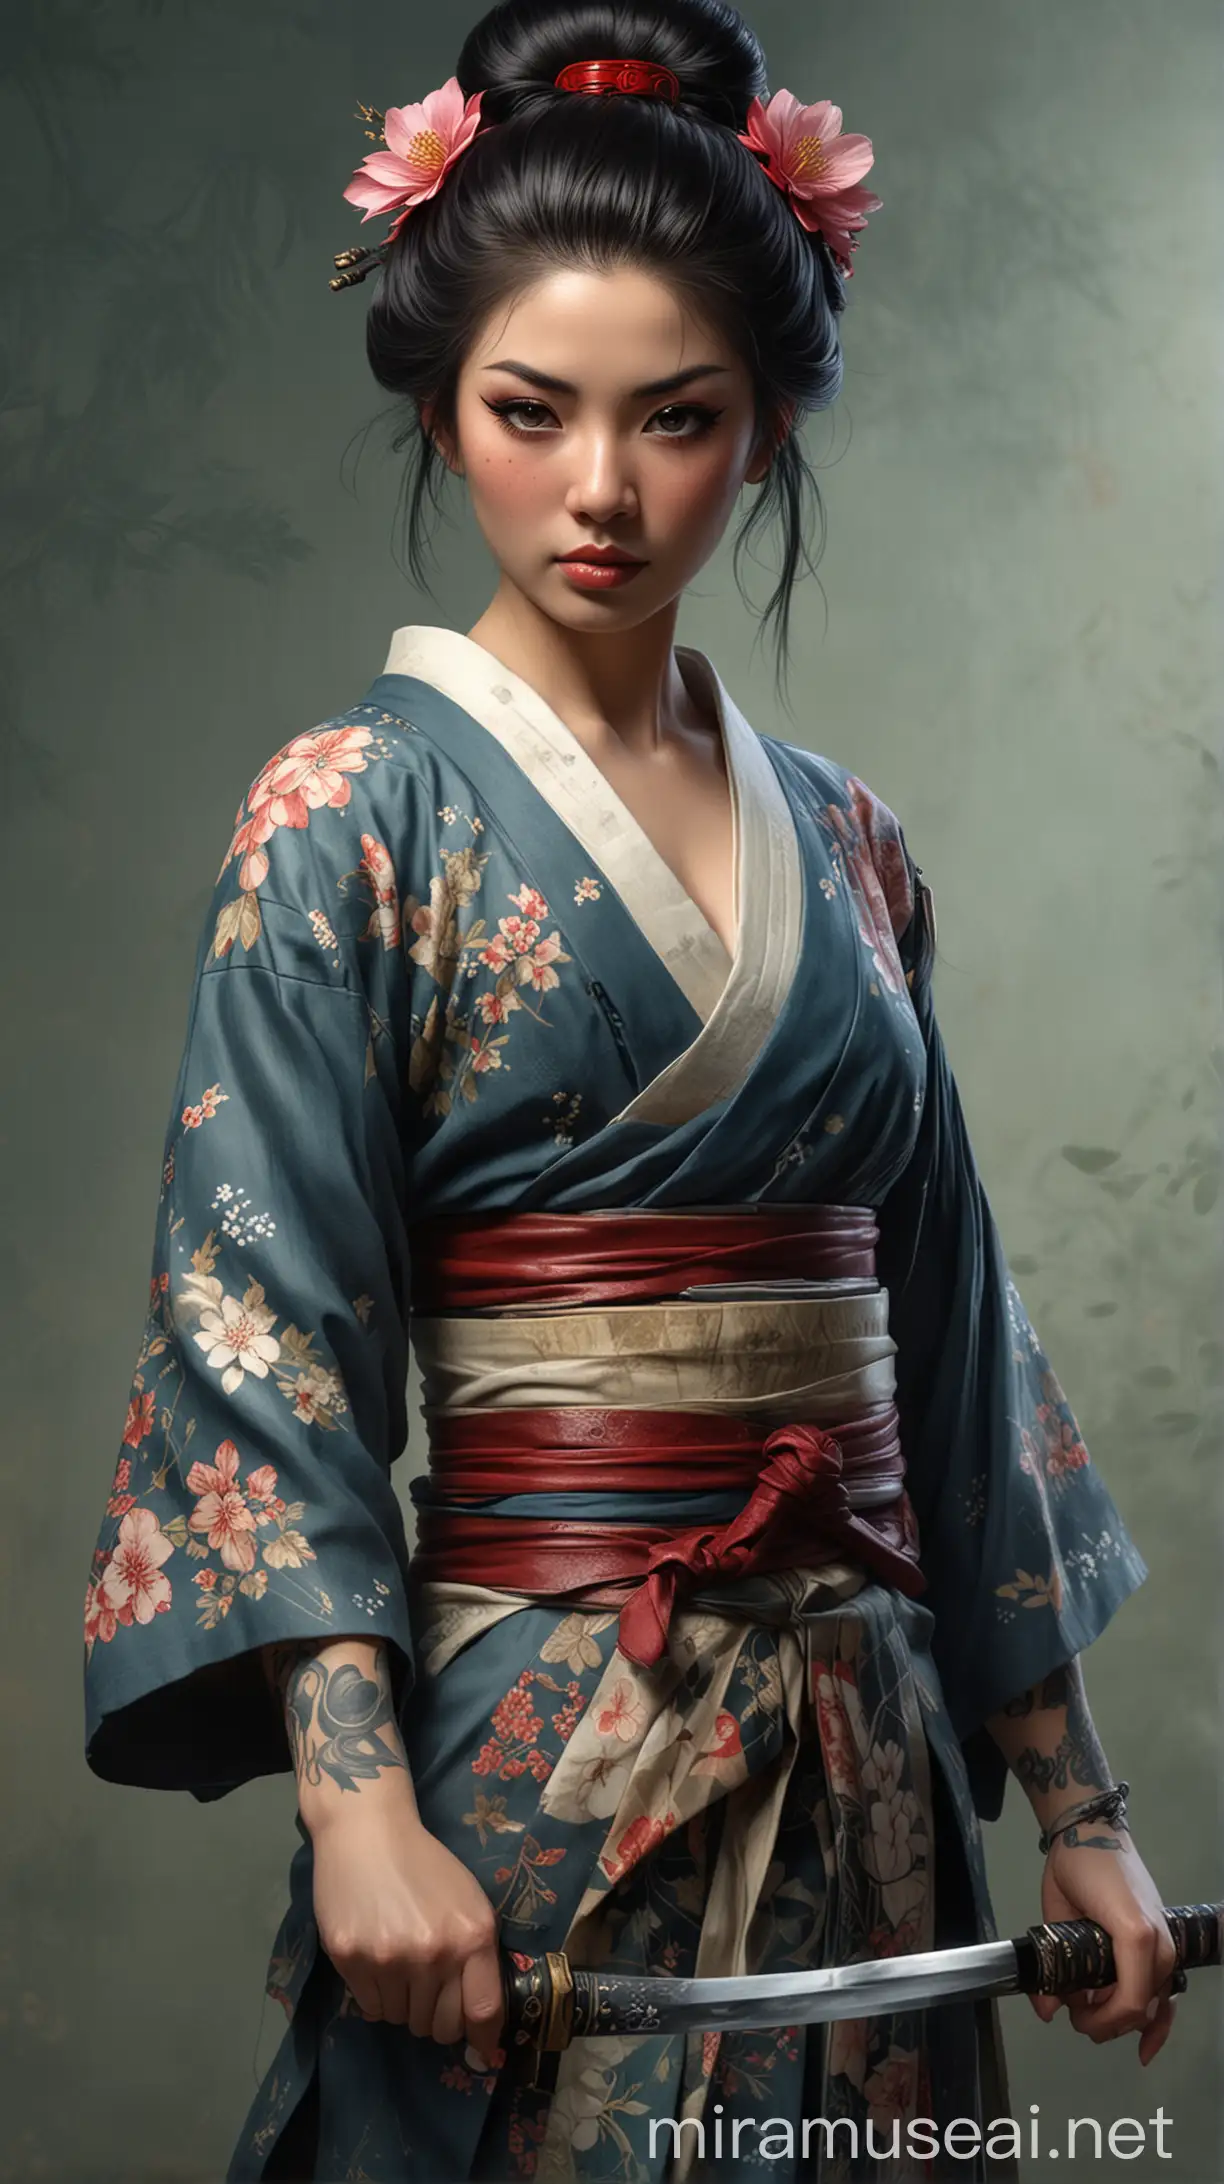 wanita geisha cantik dengan tato seluruh tubuh memegang katana pedang dalam gaya artgerm dalam gaya greg rutkowski dan dalam gaya Thomas kinkade wajah detail mata detail latar belakang bermotif definisi tinggi fokus tajam resolusi tinggi --v 66 --gaya mentah - -s 130 --ar 35:64